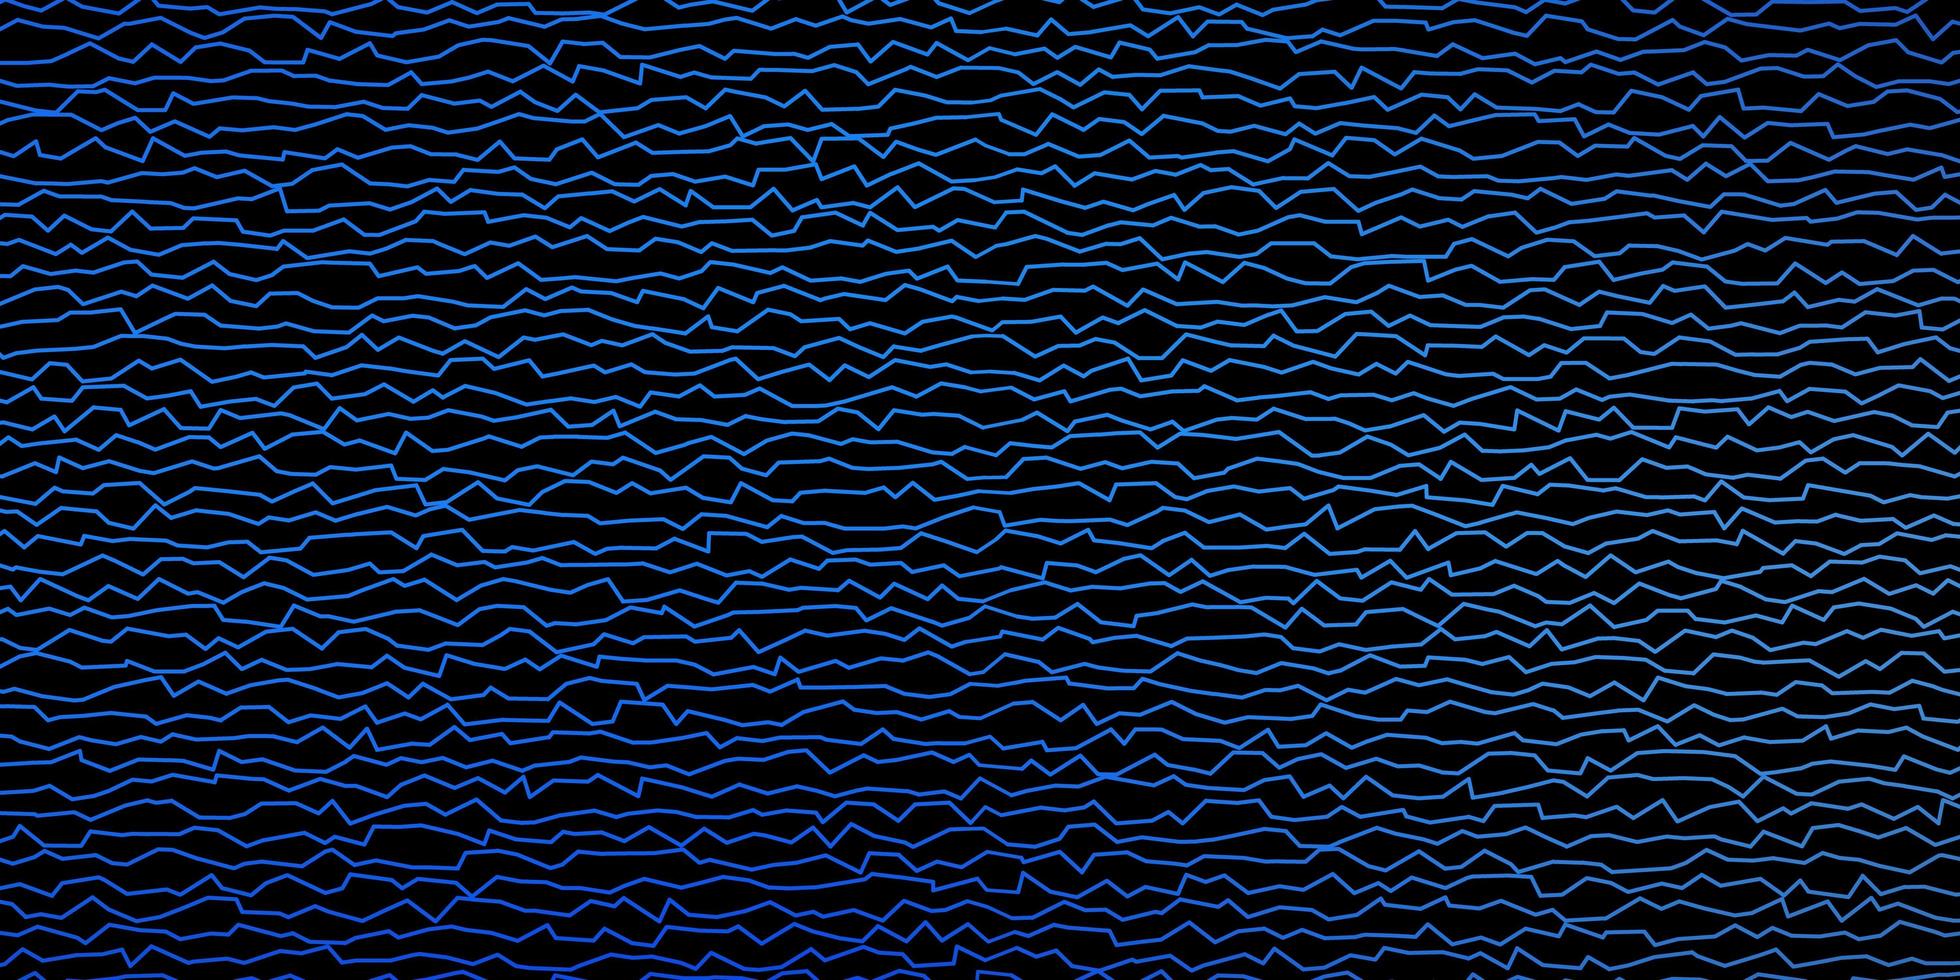 toile de fond de vecteur bleu foncé avec des lignes pliées. illustration colorée, qui se compose de courbes. modèle pour livrets d'affaires, dépliants